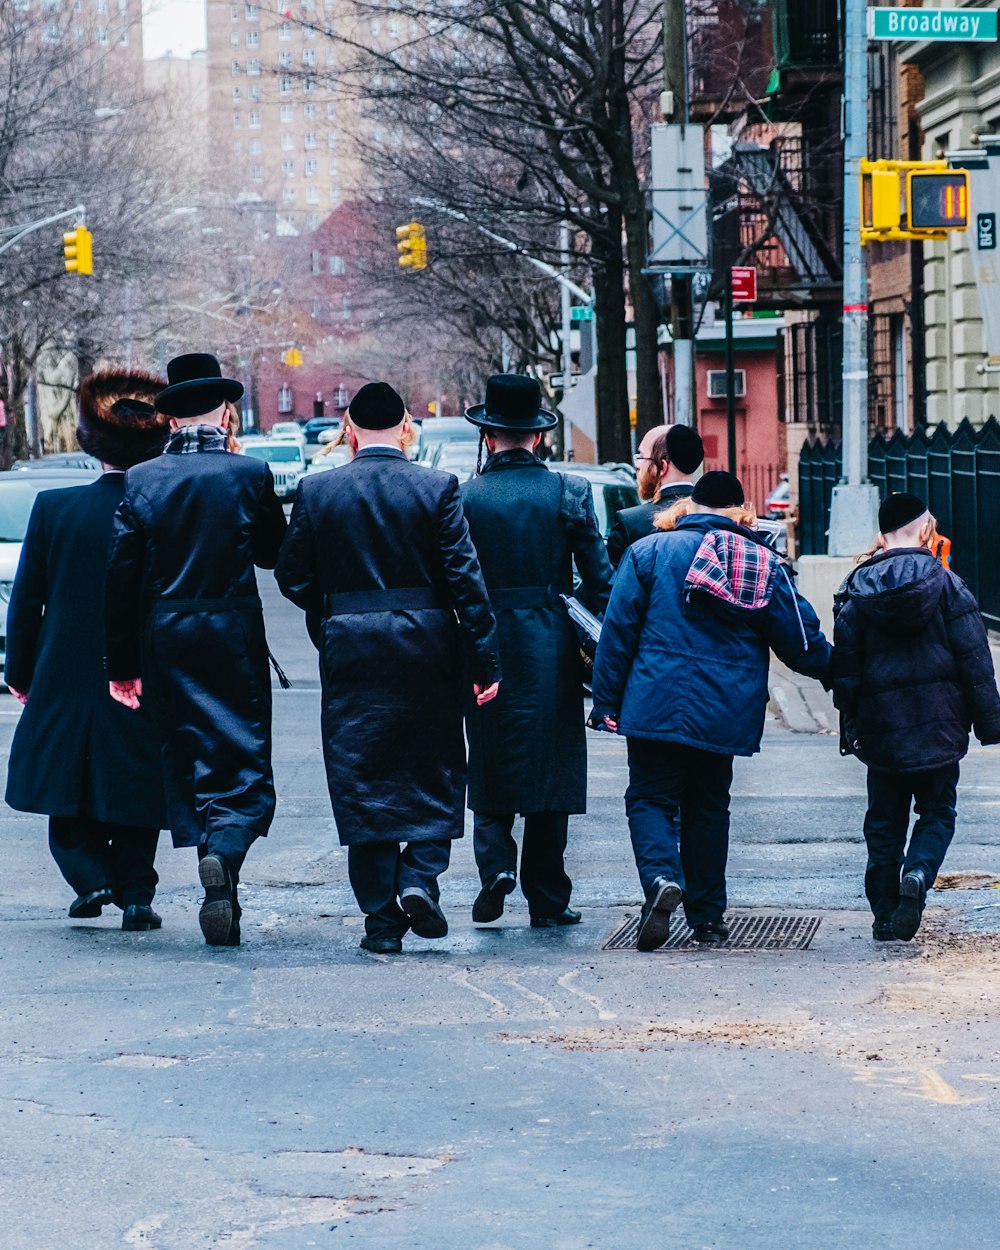 groupe d’hommes en manteau noir marchant sur le trottoir pendant la journée